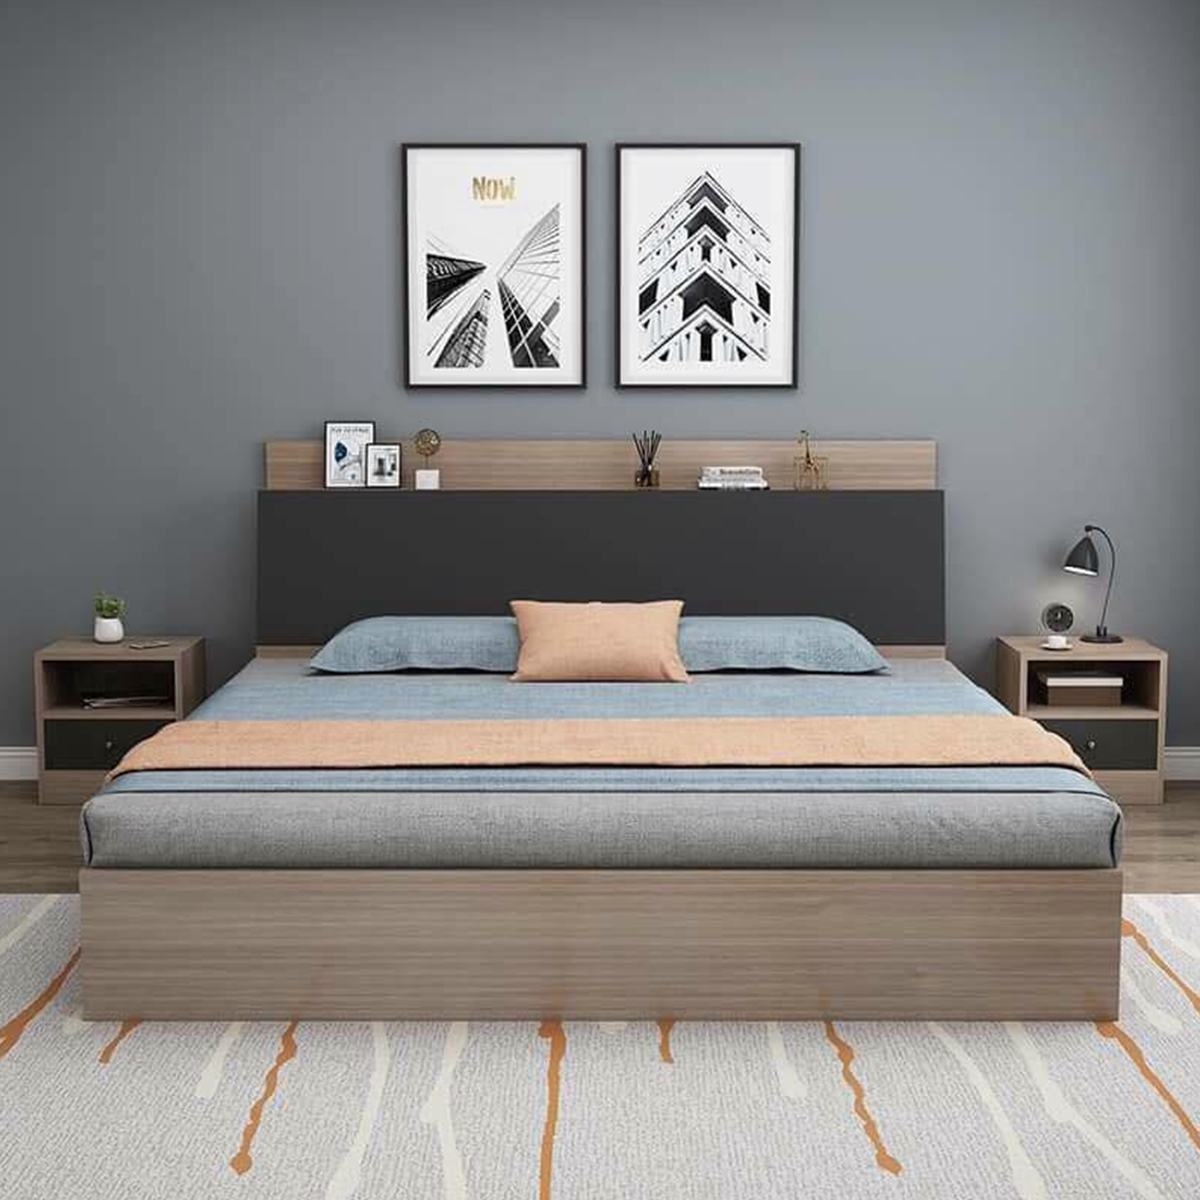 Giường ngủ gỗ 2mx2m2 đơn giản, đẹp 